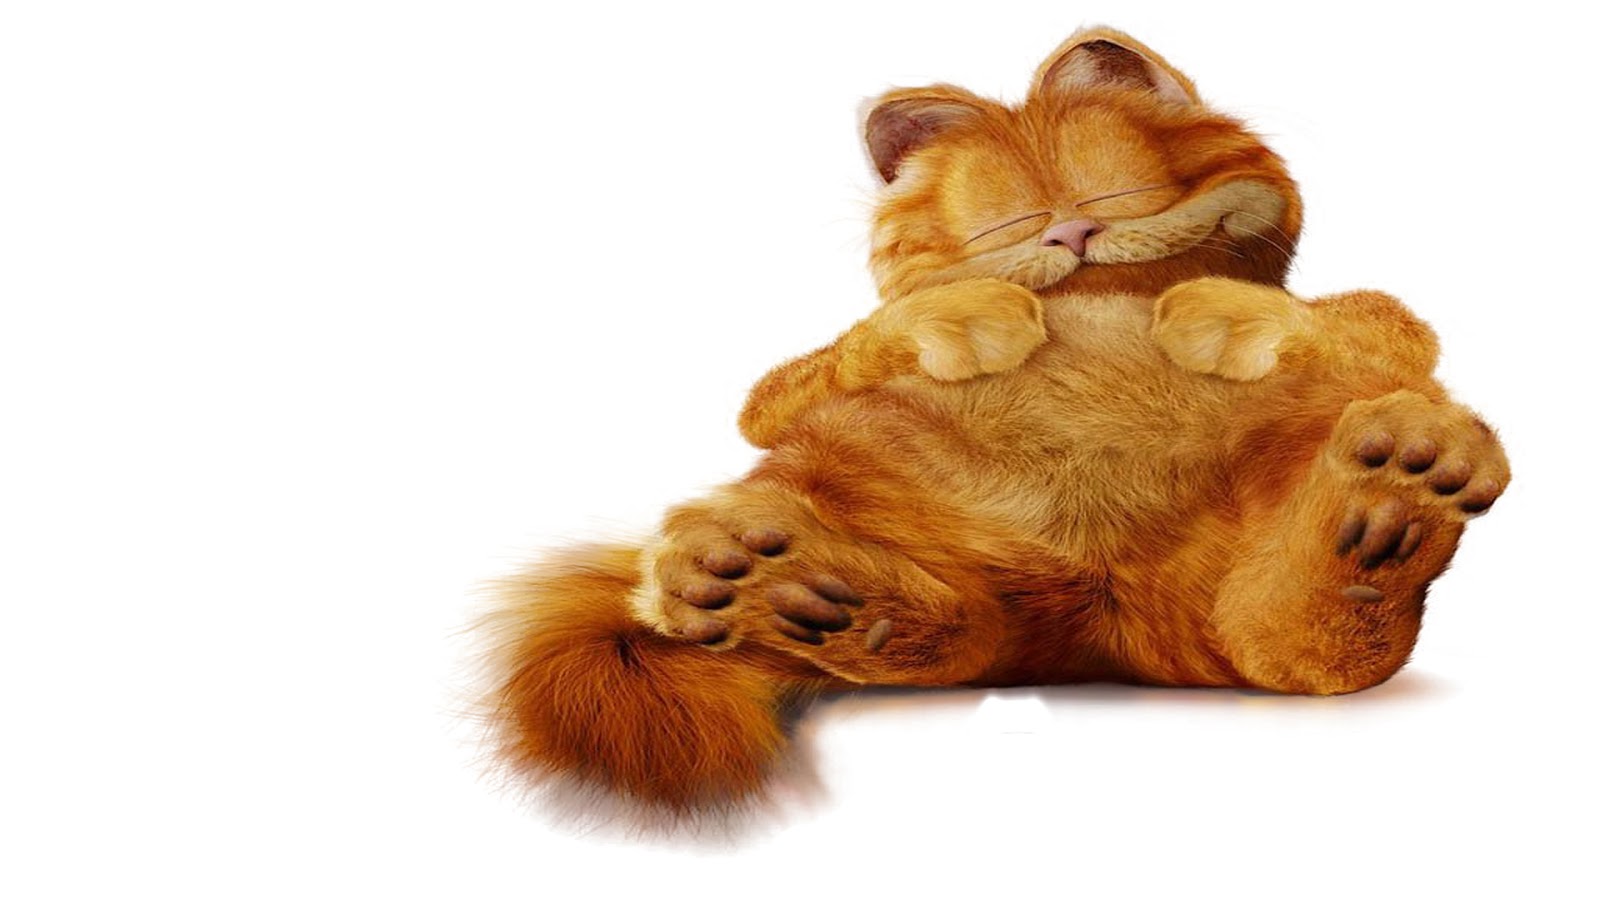 Wallpaper Lucu Gambar Kucing  Garfield  Terbaru 2021 Kata 